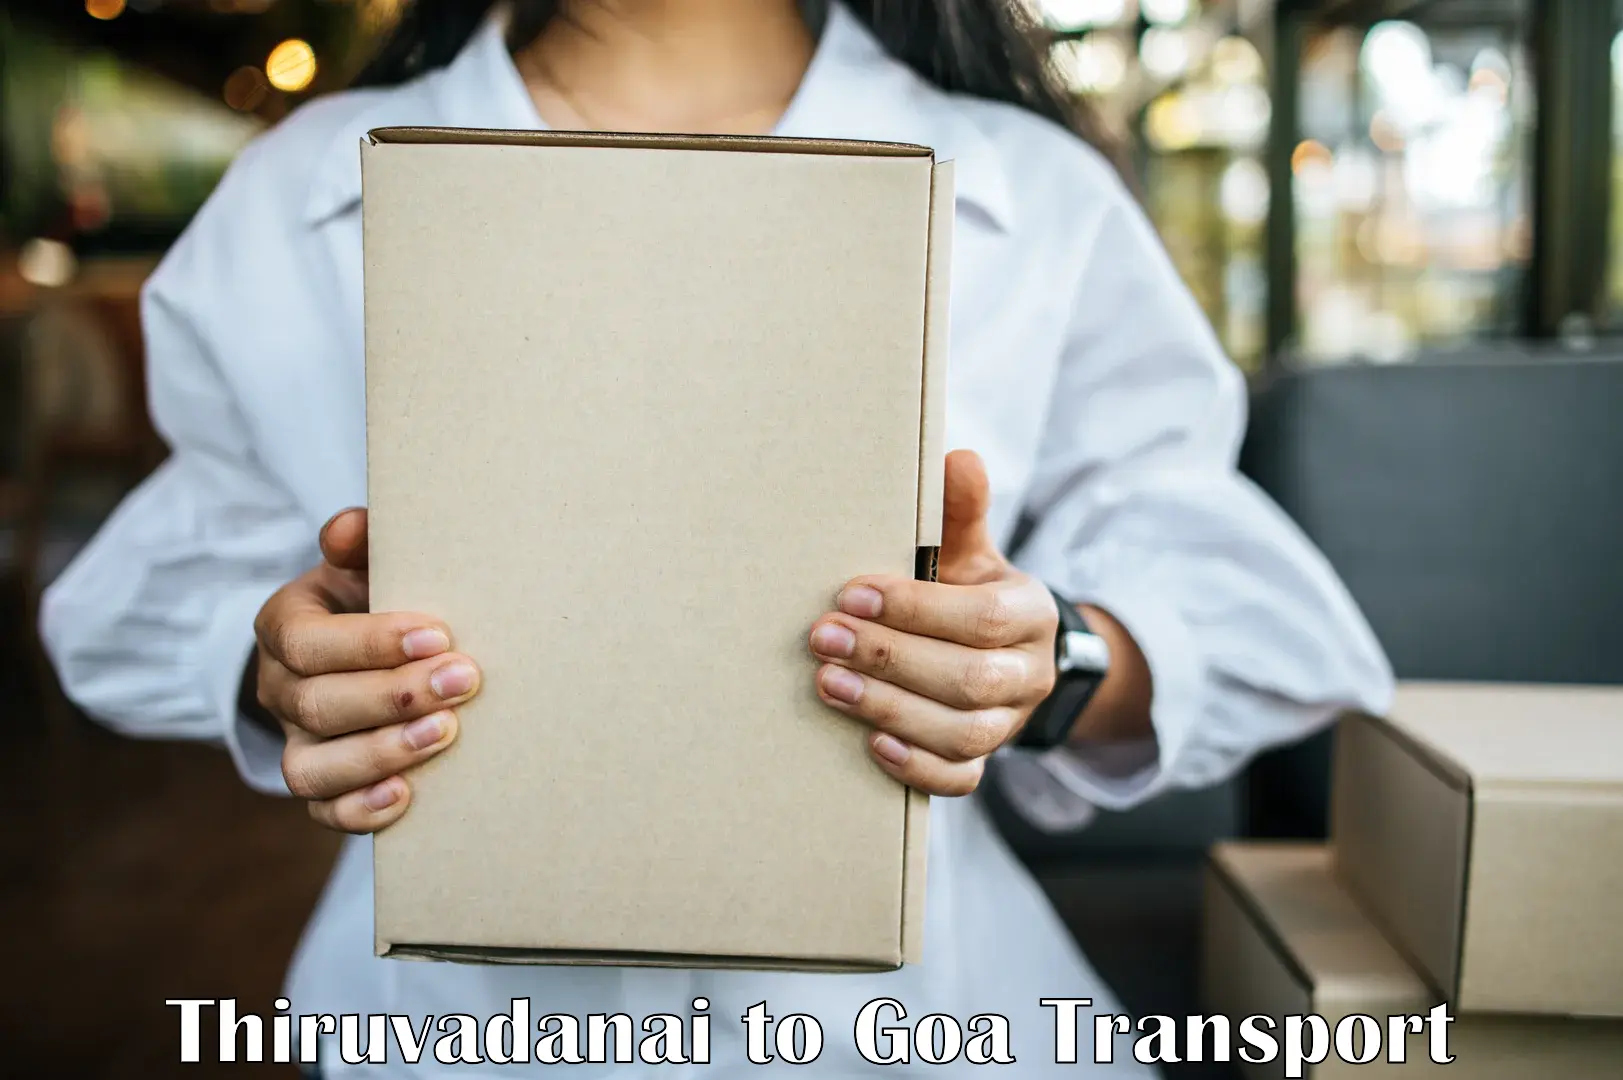 Transportation services Thiruvadanai to Ponda